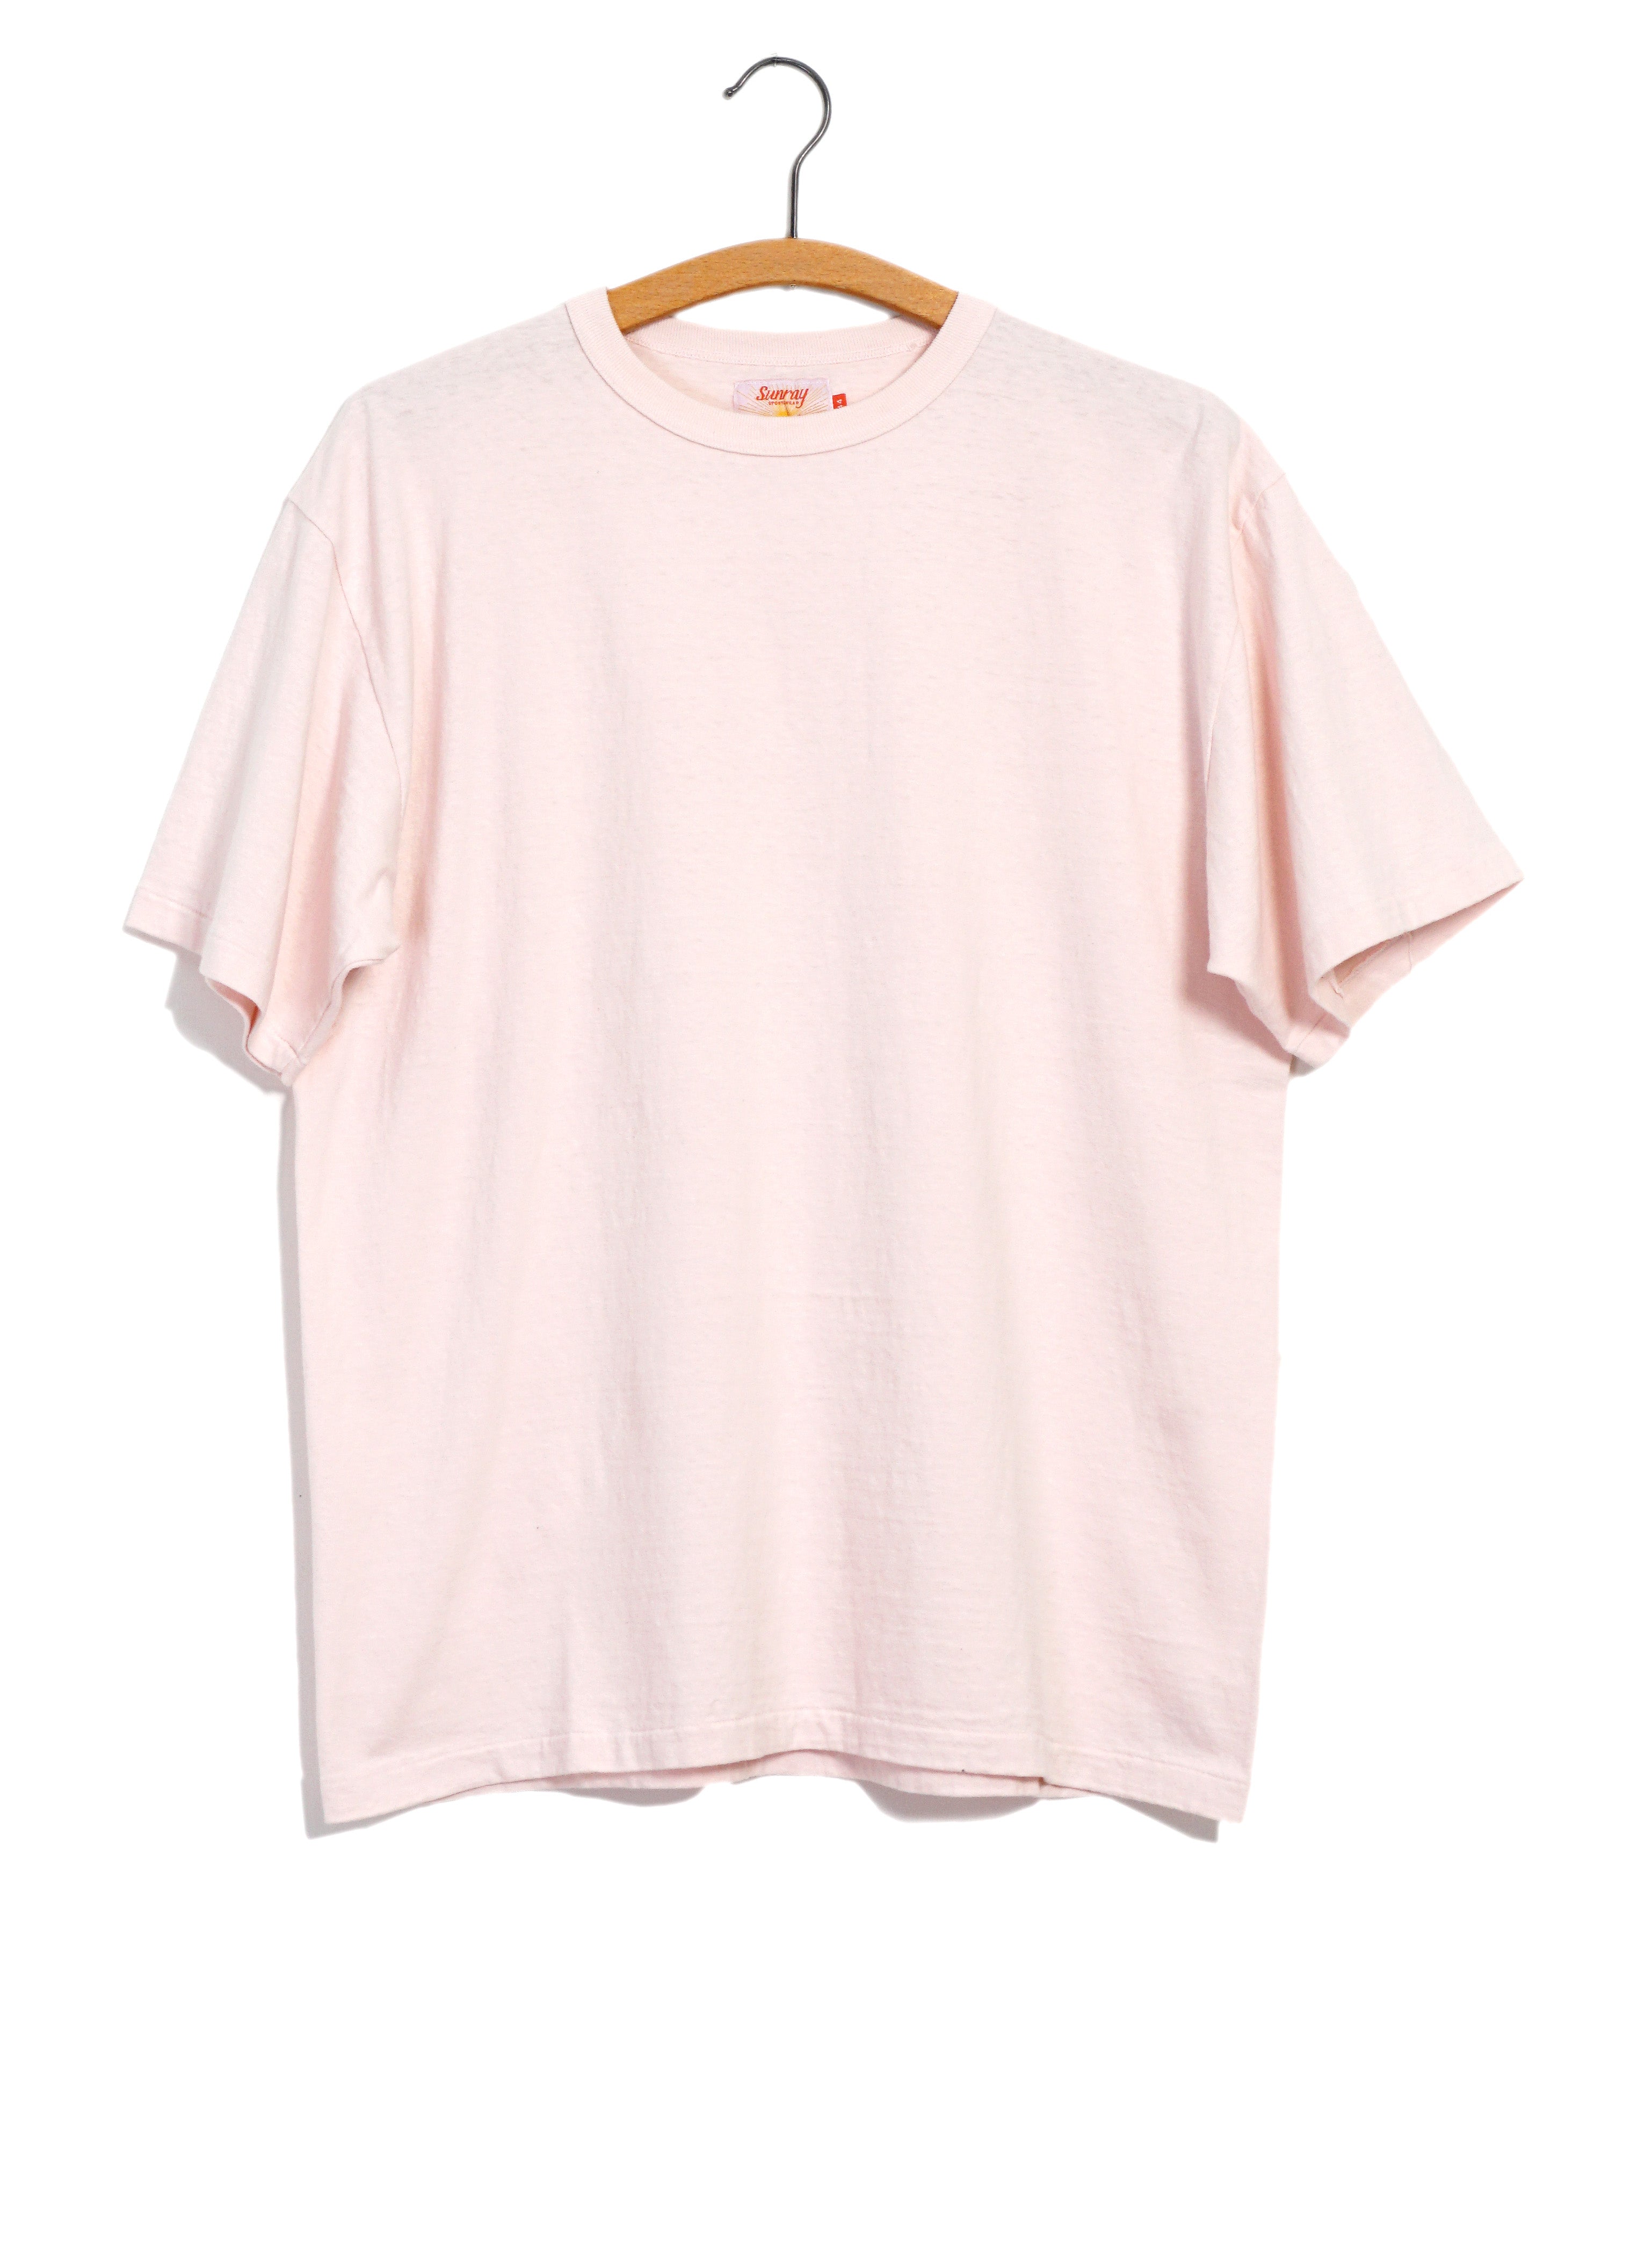 HALEIWA | Short Sleeve T-Shirt | Mauve Chalk